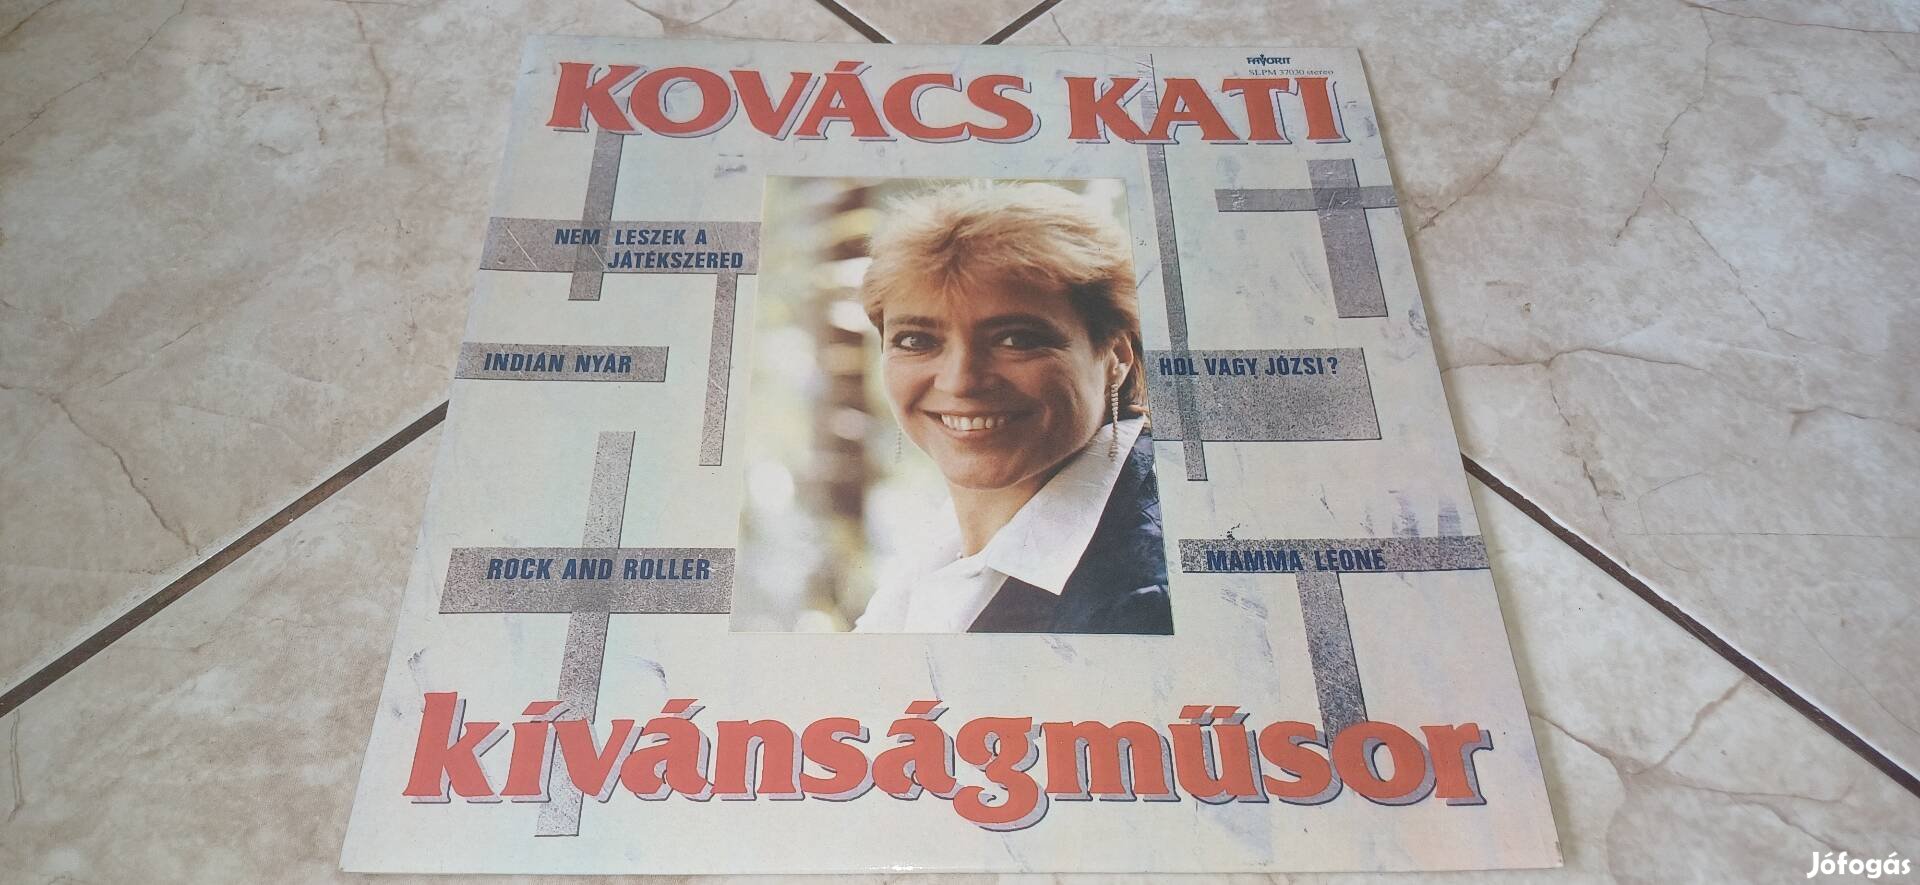 Kovács Kati bakelit lemez